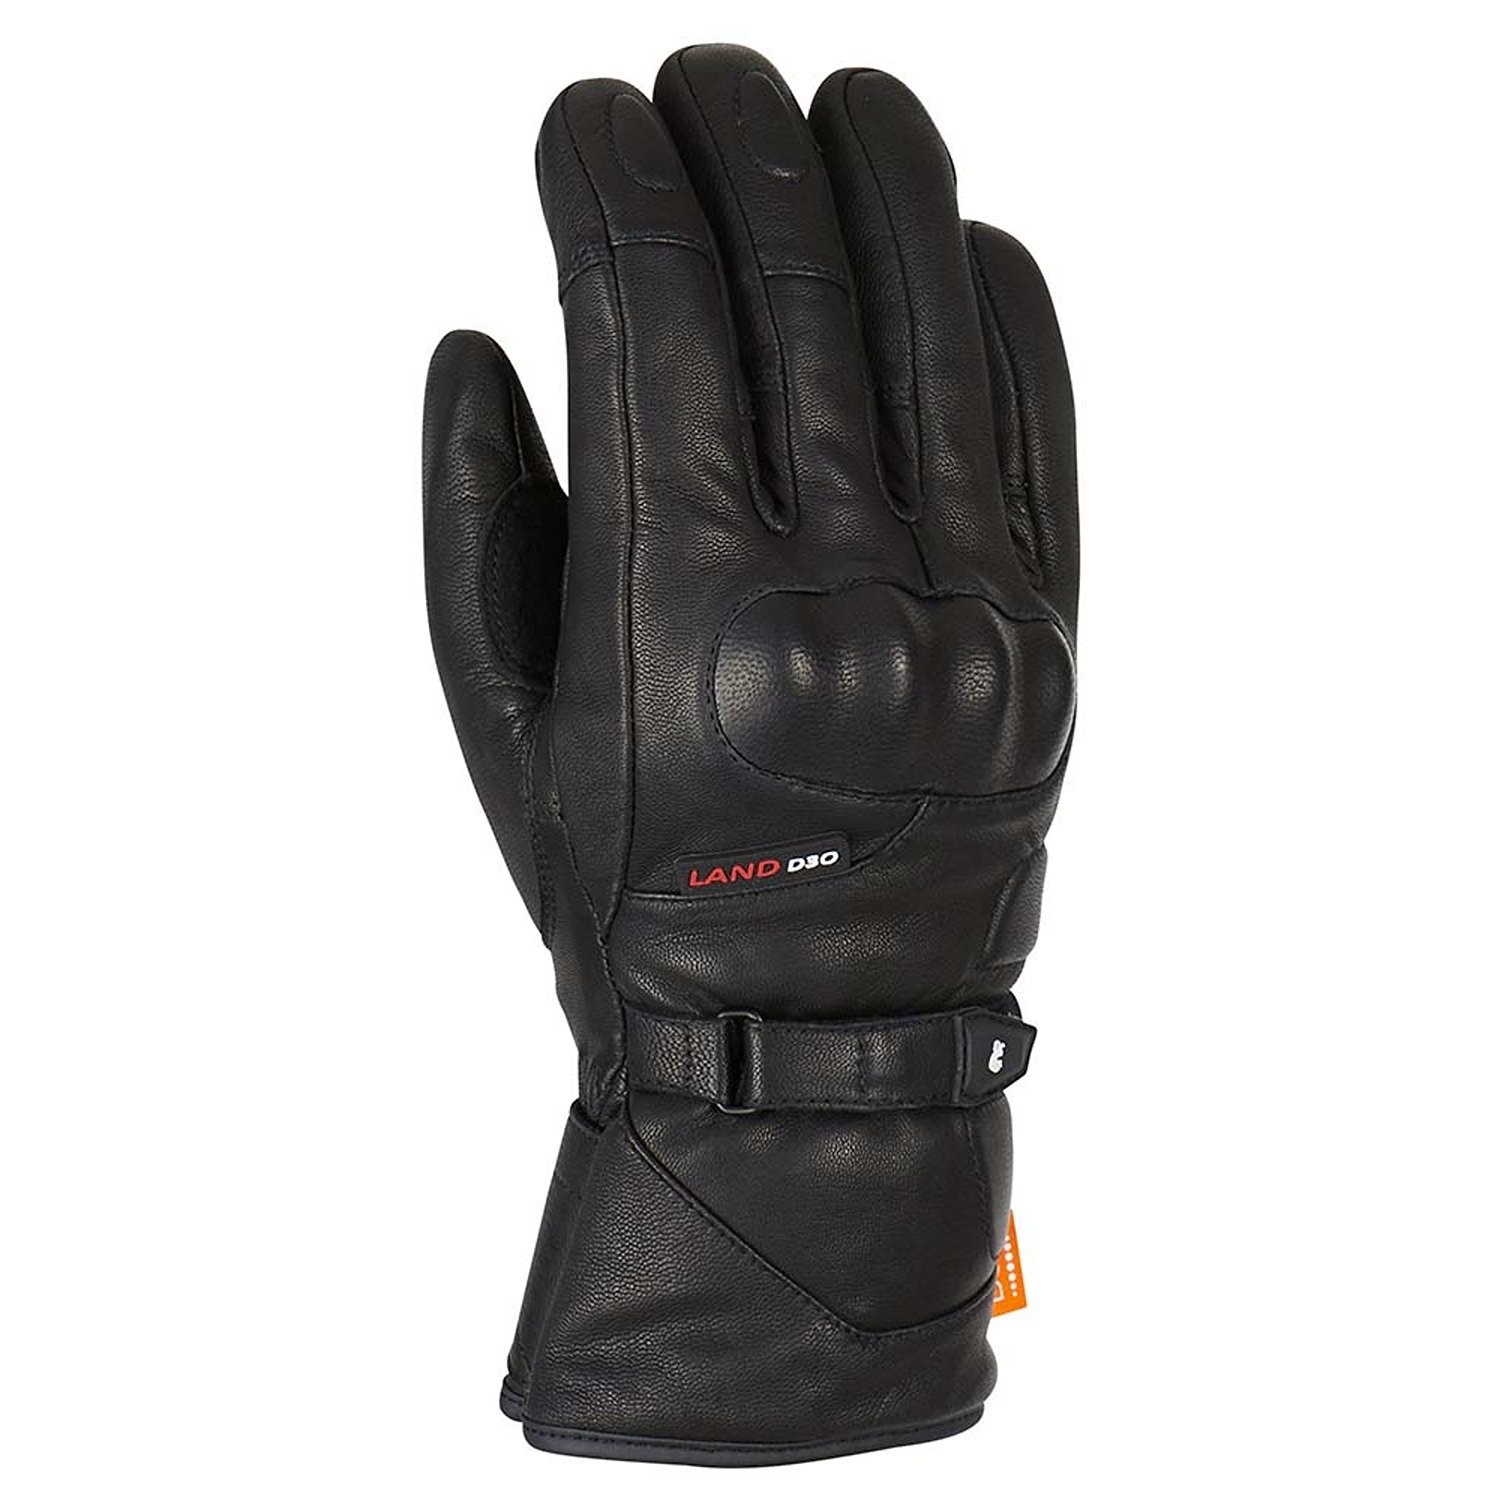 Image of Furygan Land DK D30 Gloves Black Größe M